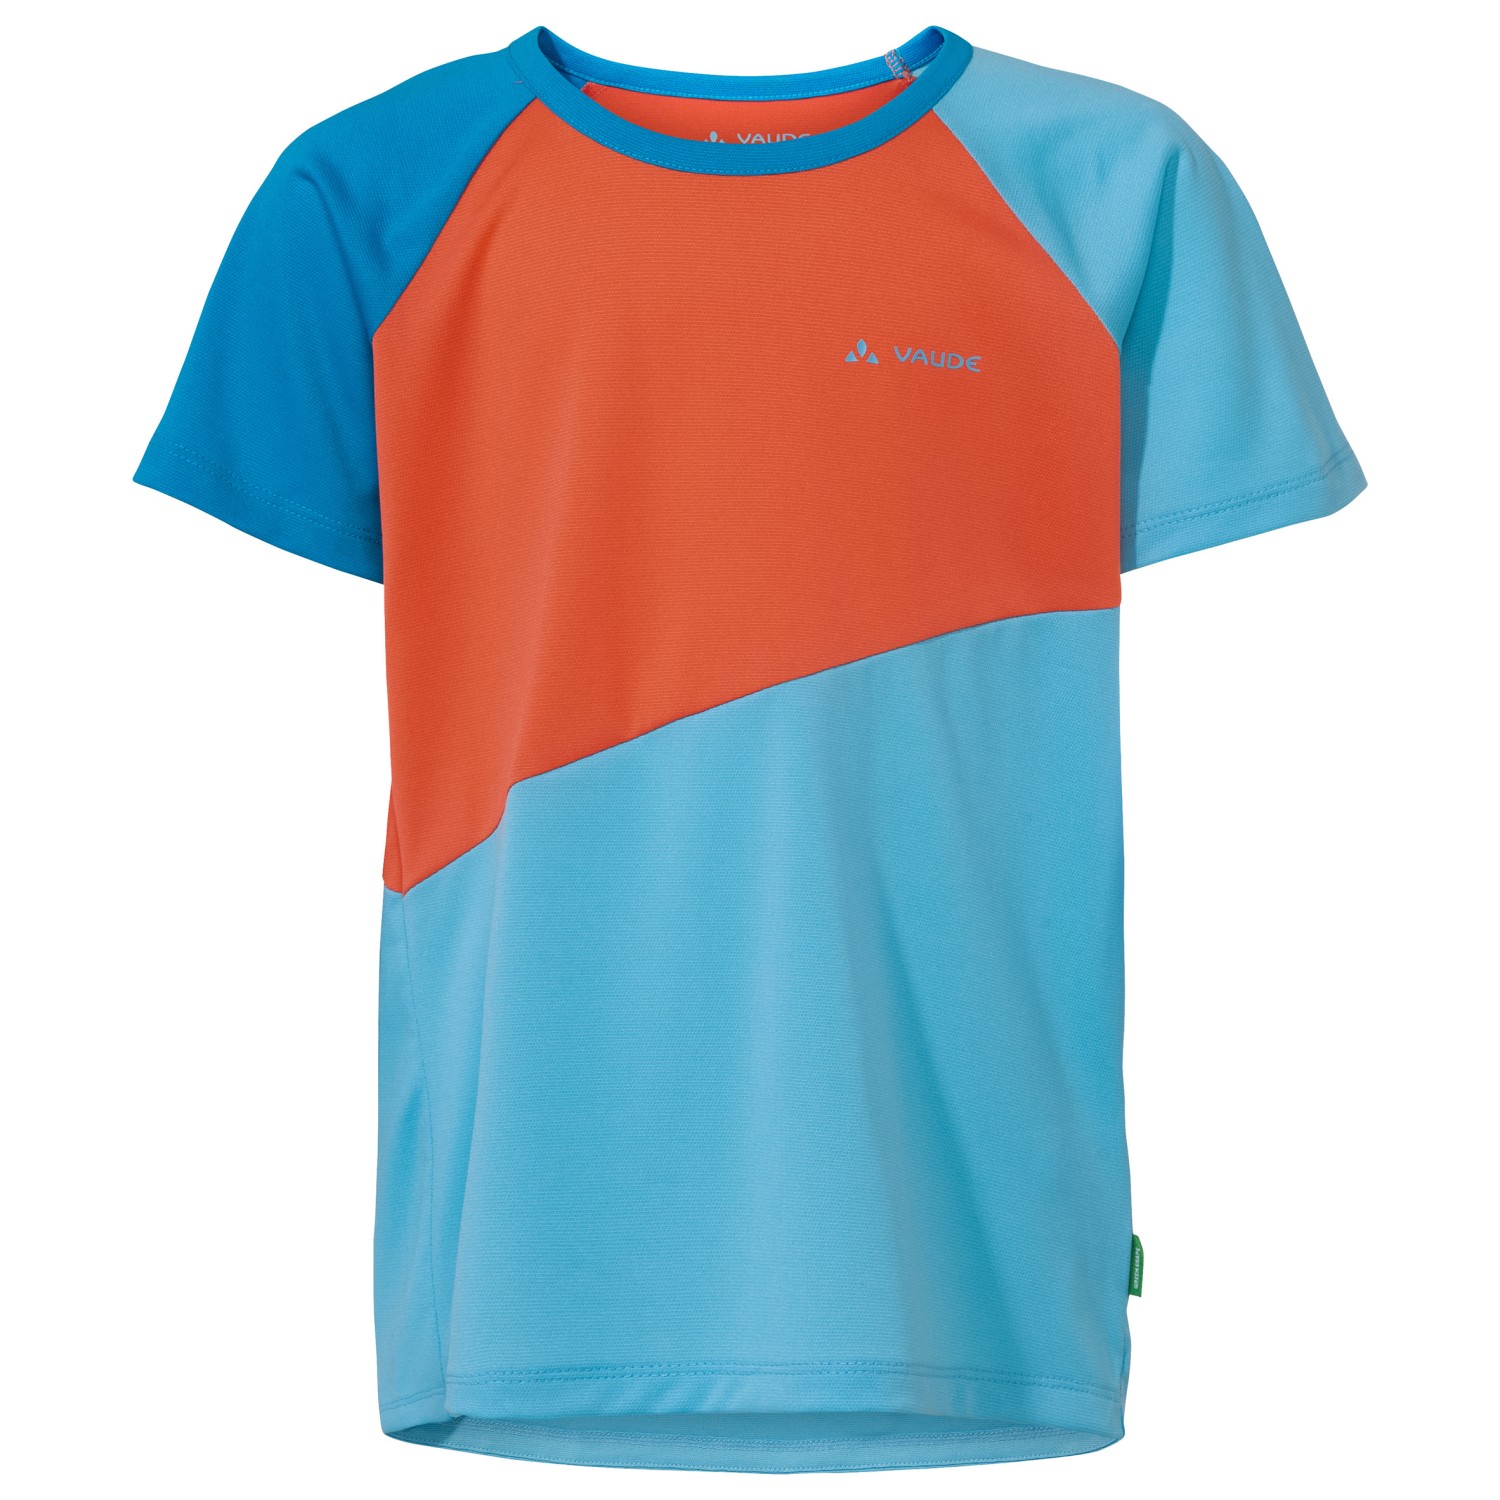 Функциональная рубашка Vaude Kid's Moab T Shirt II, цвет Crystal Blue велосипедный трикотаж vaude moab l s t shirt vi цвет nordic blue